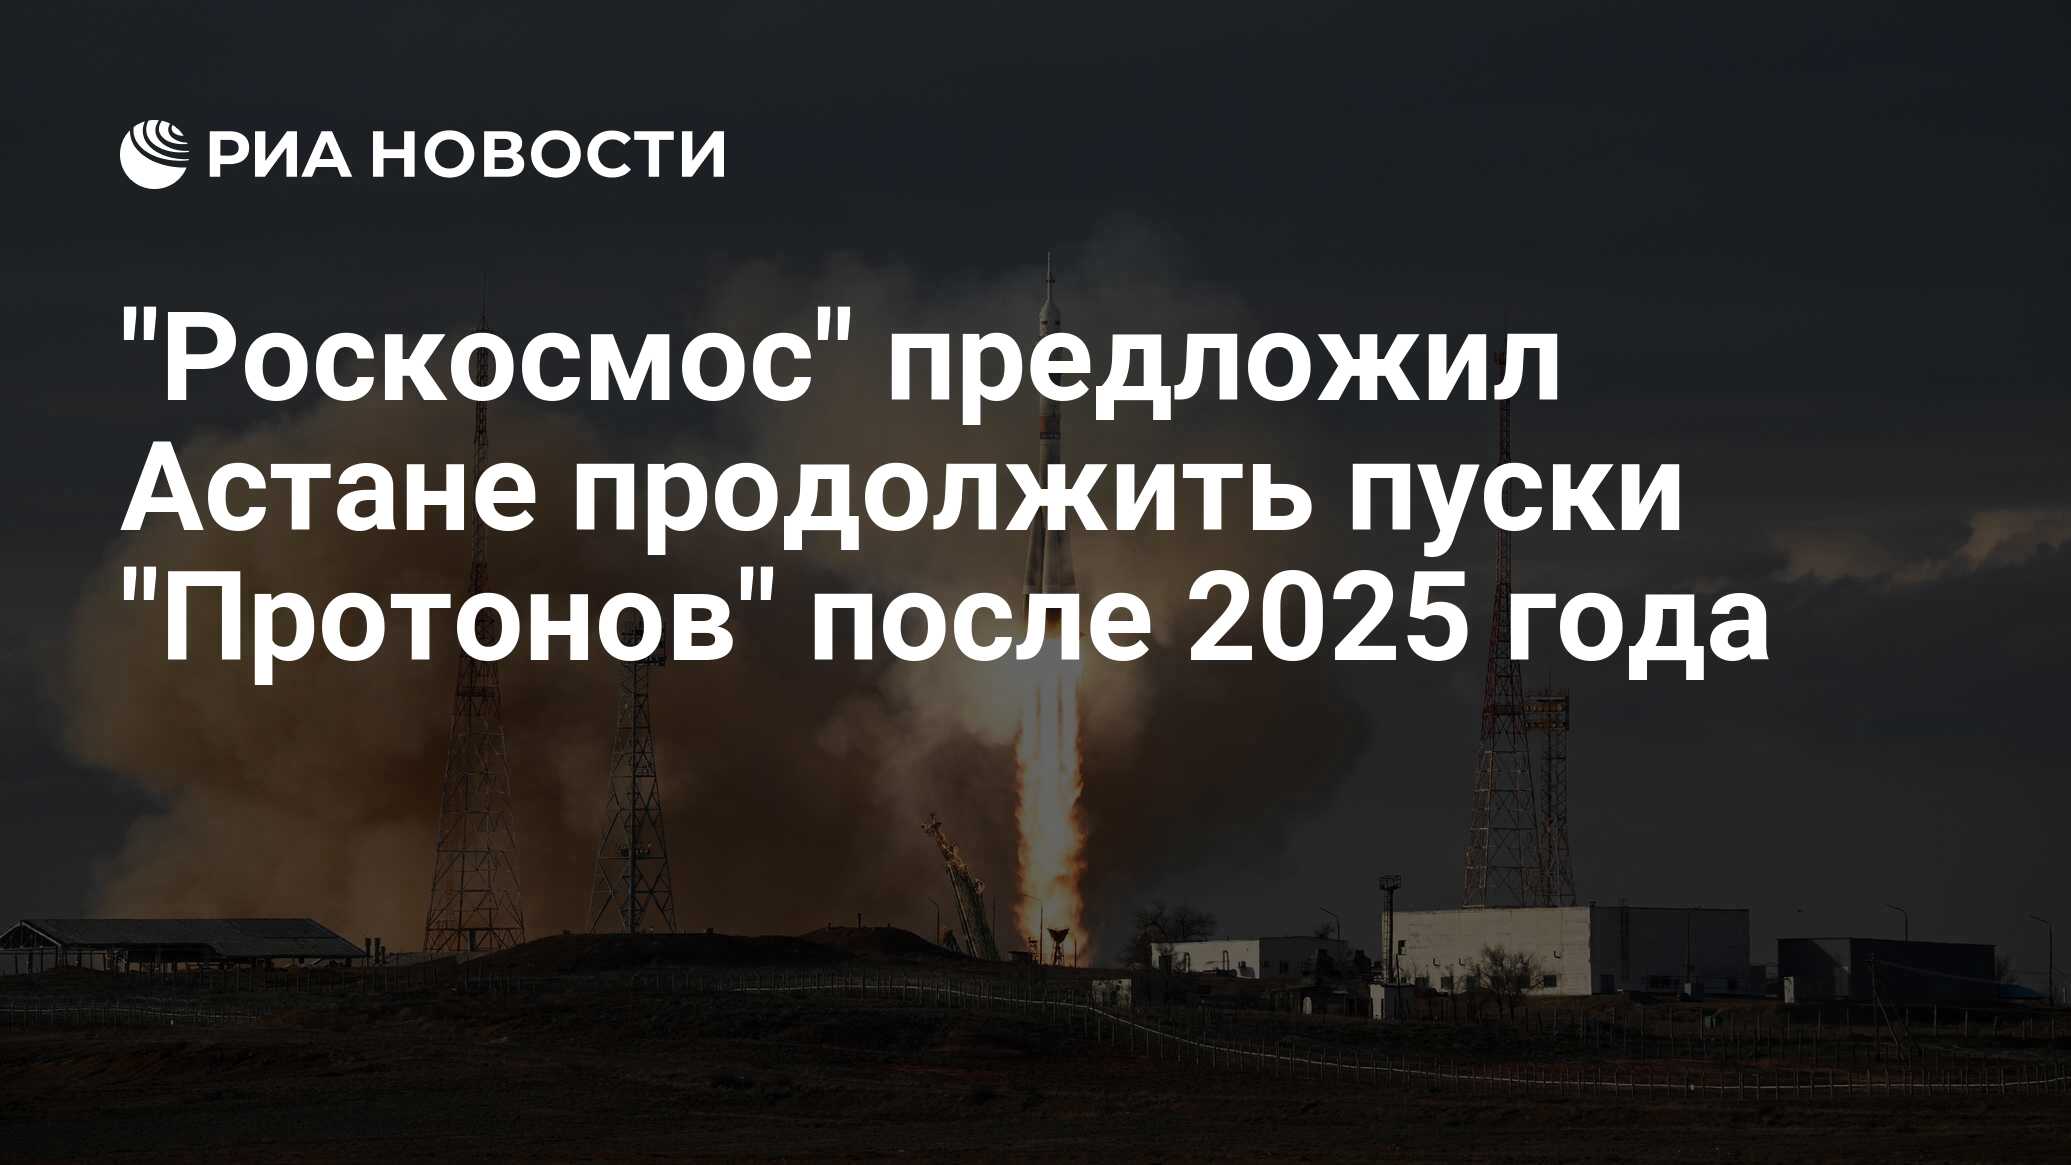 "Роскосмос" предложил Астане продолжить пуски "Протонов" после 2025 года - РИА Новости, 23.04.2024